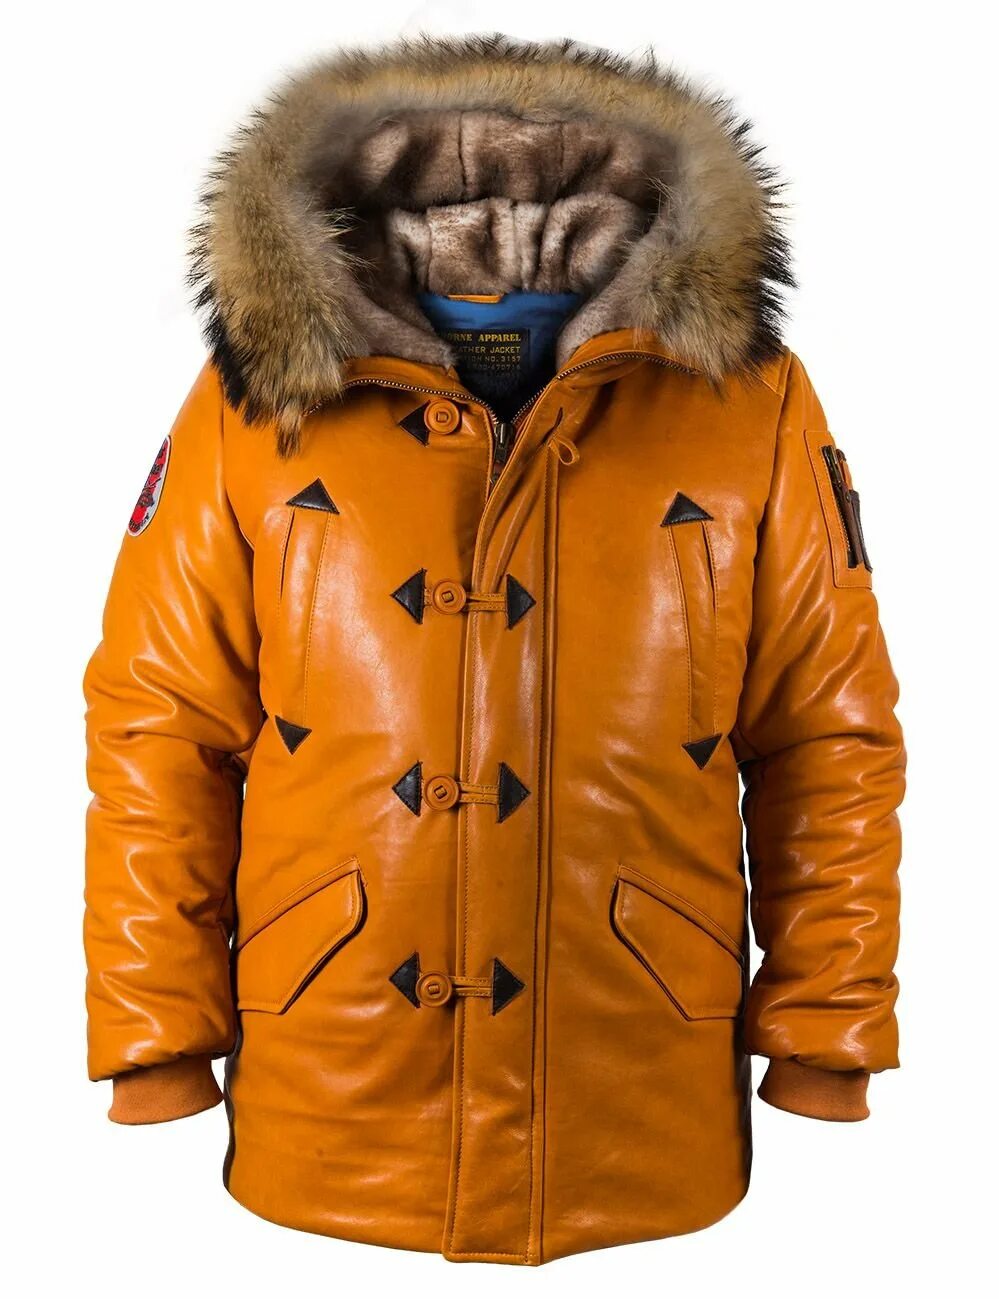 Где купить аляски. Куртка Аляска North Pole. Куртка Аляска ВМФ. Куртка Аляска Альпина. Кожаная Аляска мужская.